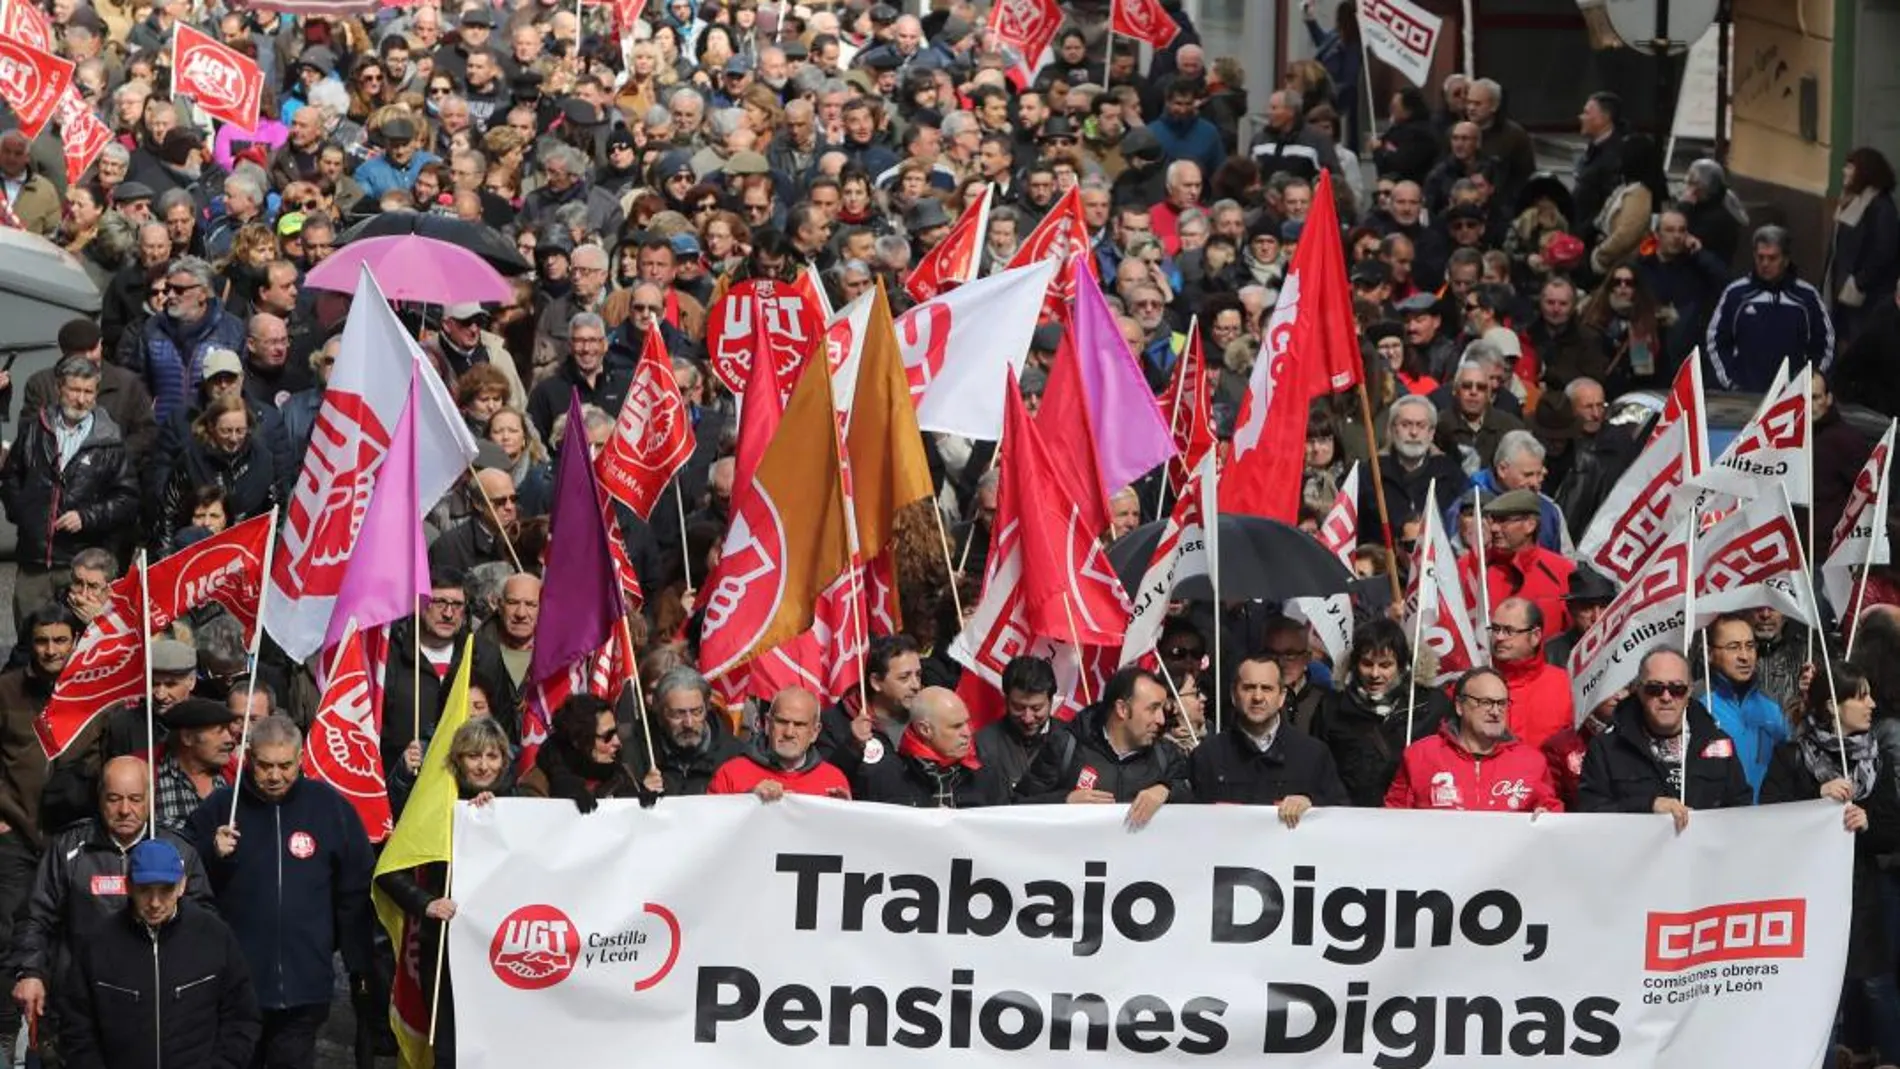 Manifestación convocada por los sindicatos UGT y CCOO y otras organizaciones sociales en Ponferrada, para reivindicar que se garanticen pensiones “dignas”